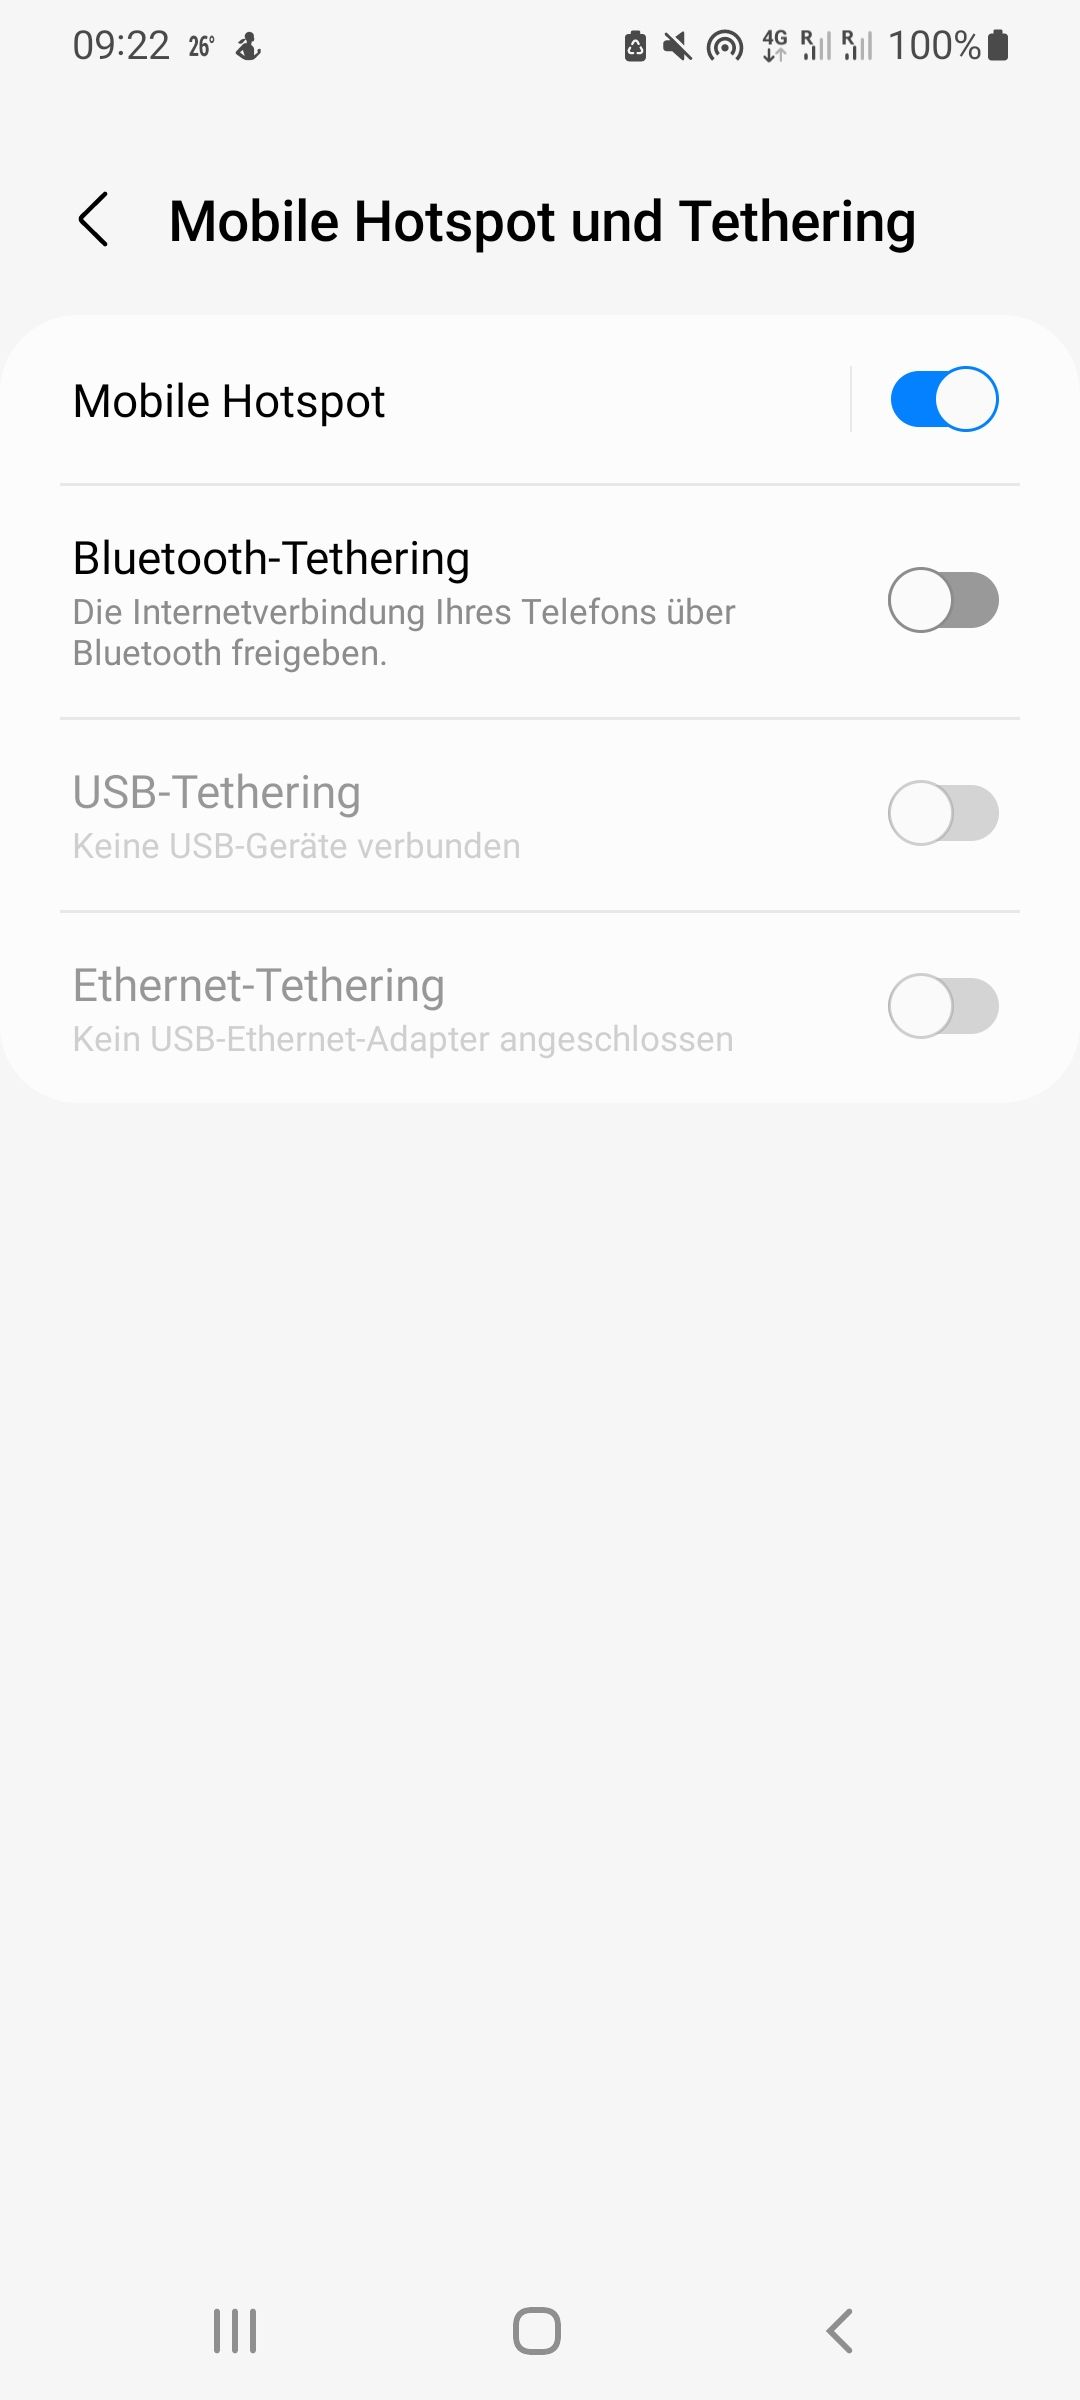 USB Tethering funktioniert nicht! - Samsung Community